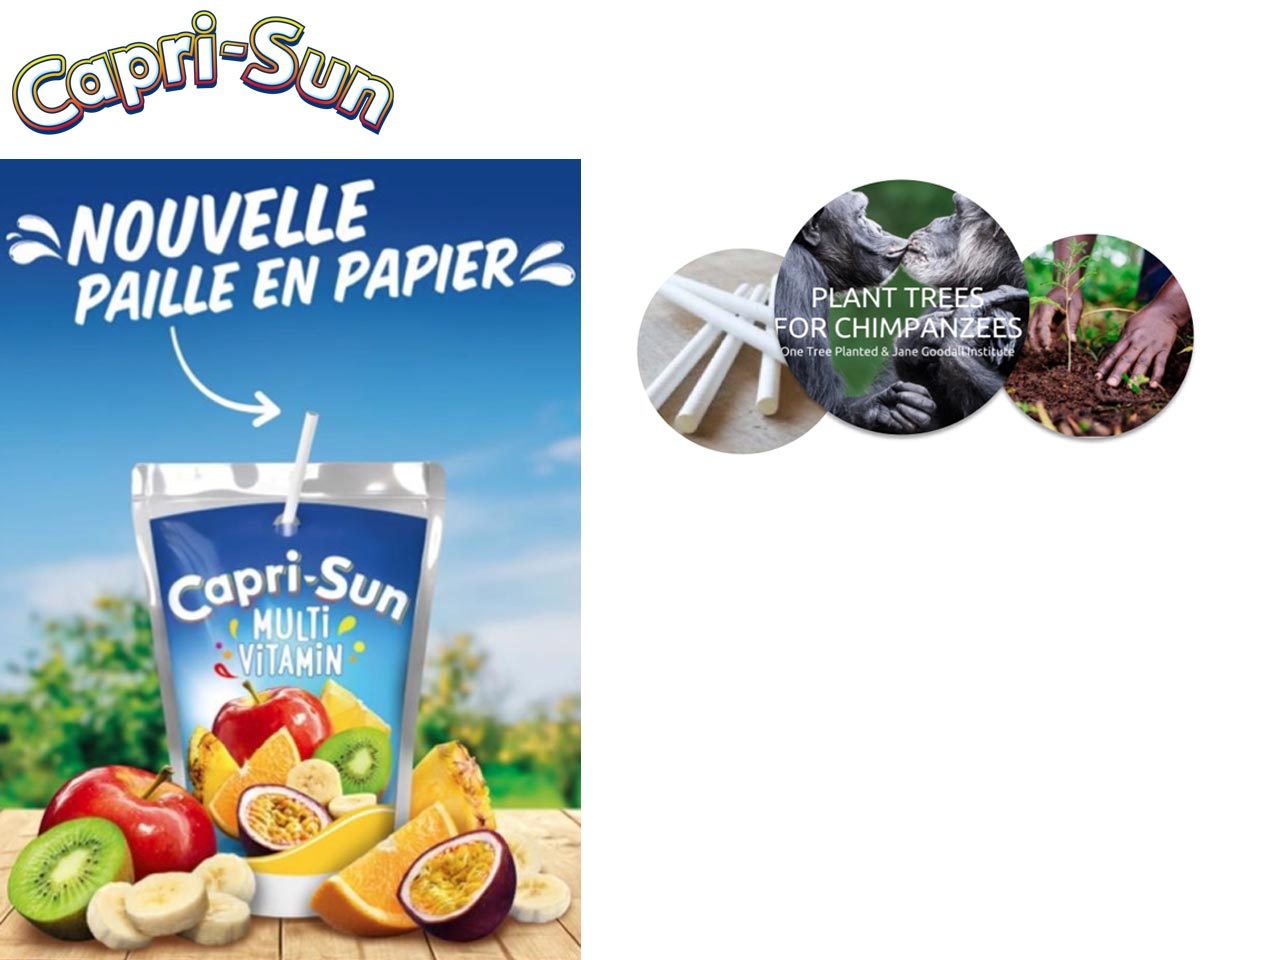 Capri-Sun lance sa paille en papier pour accompagner sa poche iconique